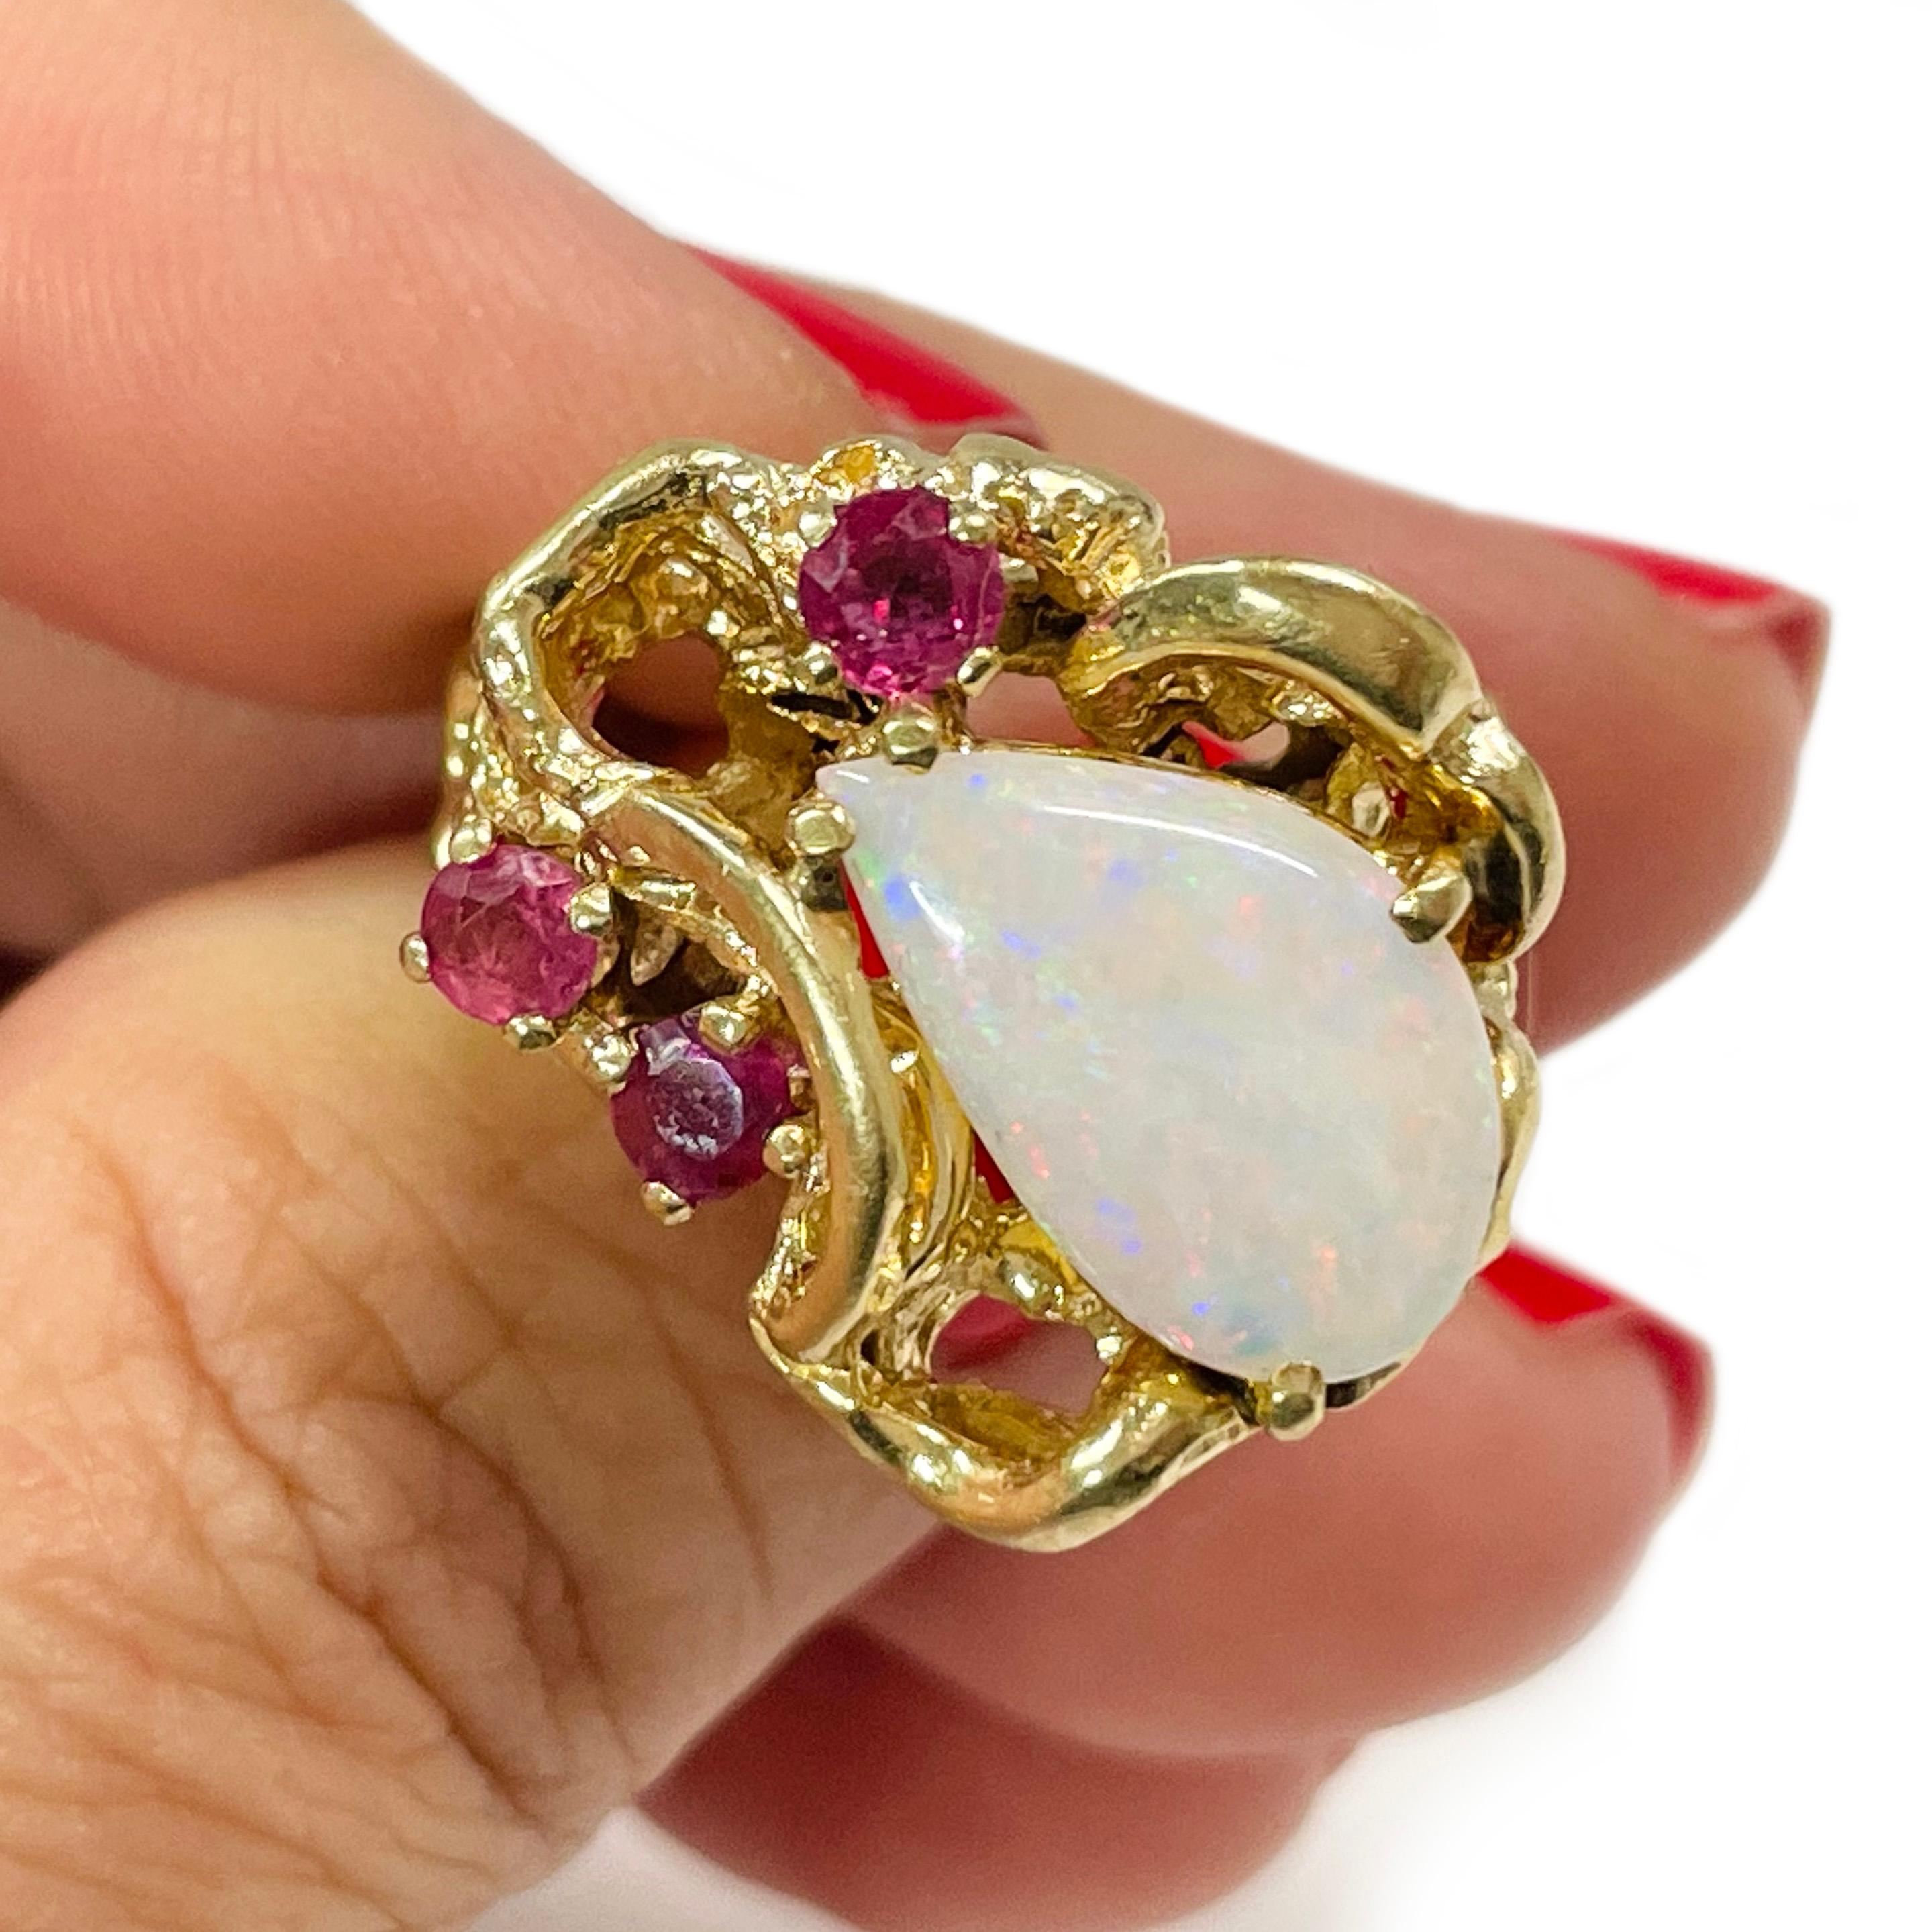 14 Karat Gelbgold Opal Rubin Ring. Der Ring ist mit einem 13,2 x 8,5 mm großen Opal verziert. Der Opal ist in Zacken gefasst und mit asymmetrischen Goldwirbeln und Nuggets versehen. Auf einer Seite des Opals sind 3 runde Rubine in Zacken gefasst.